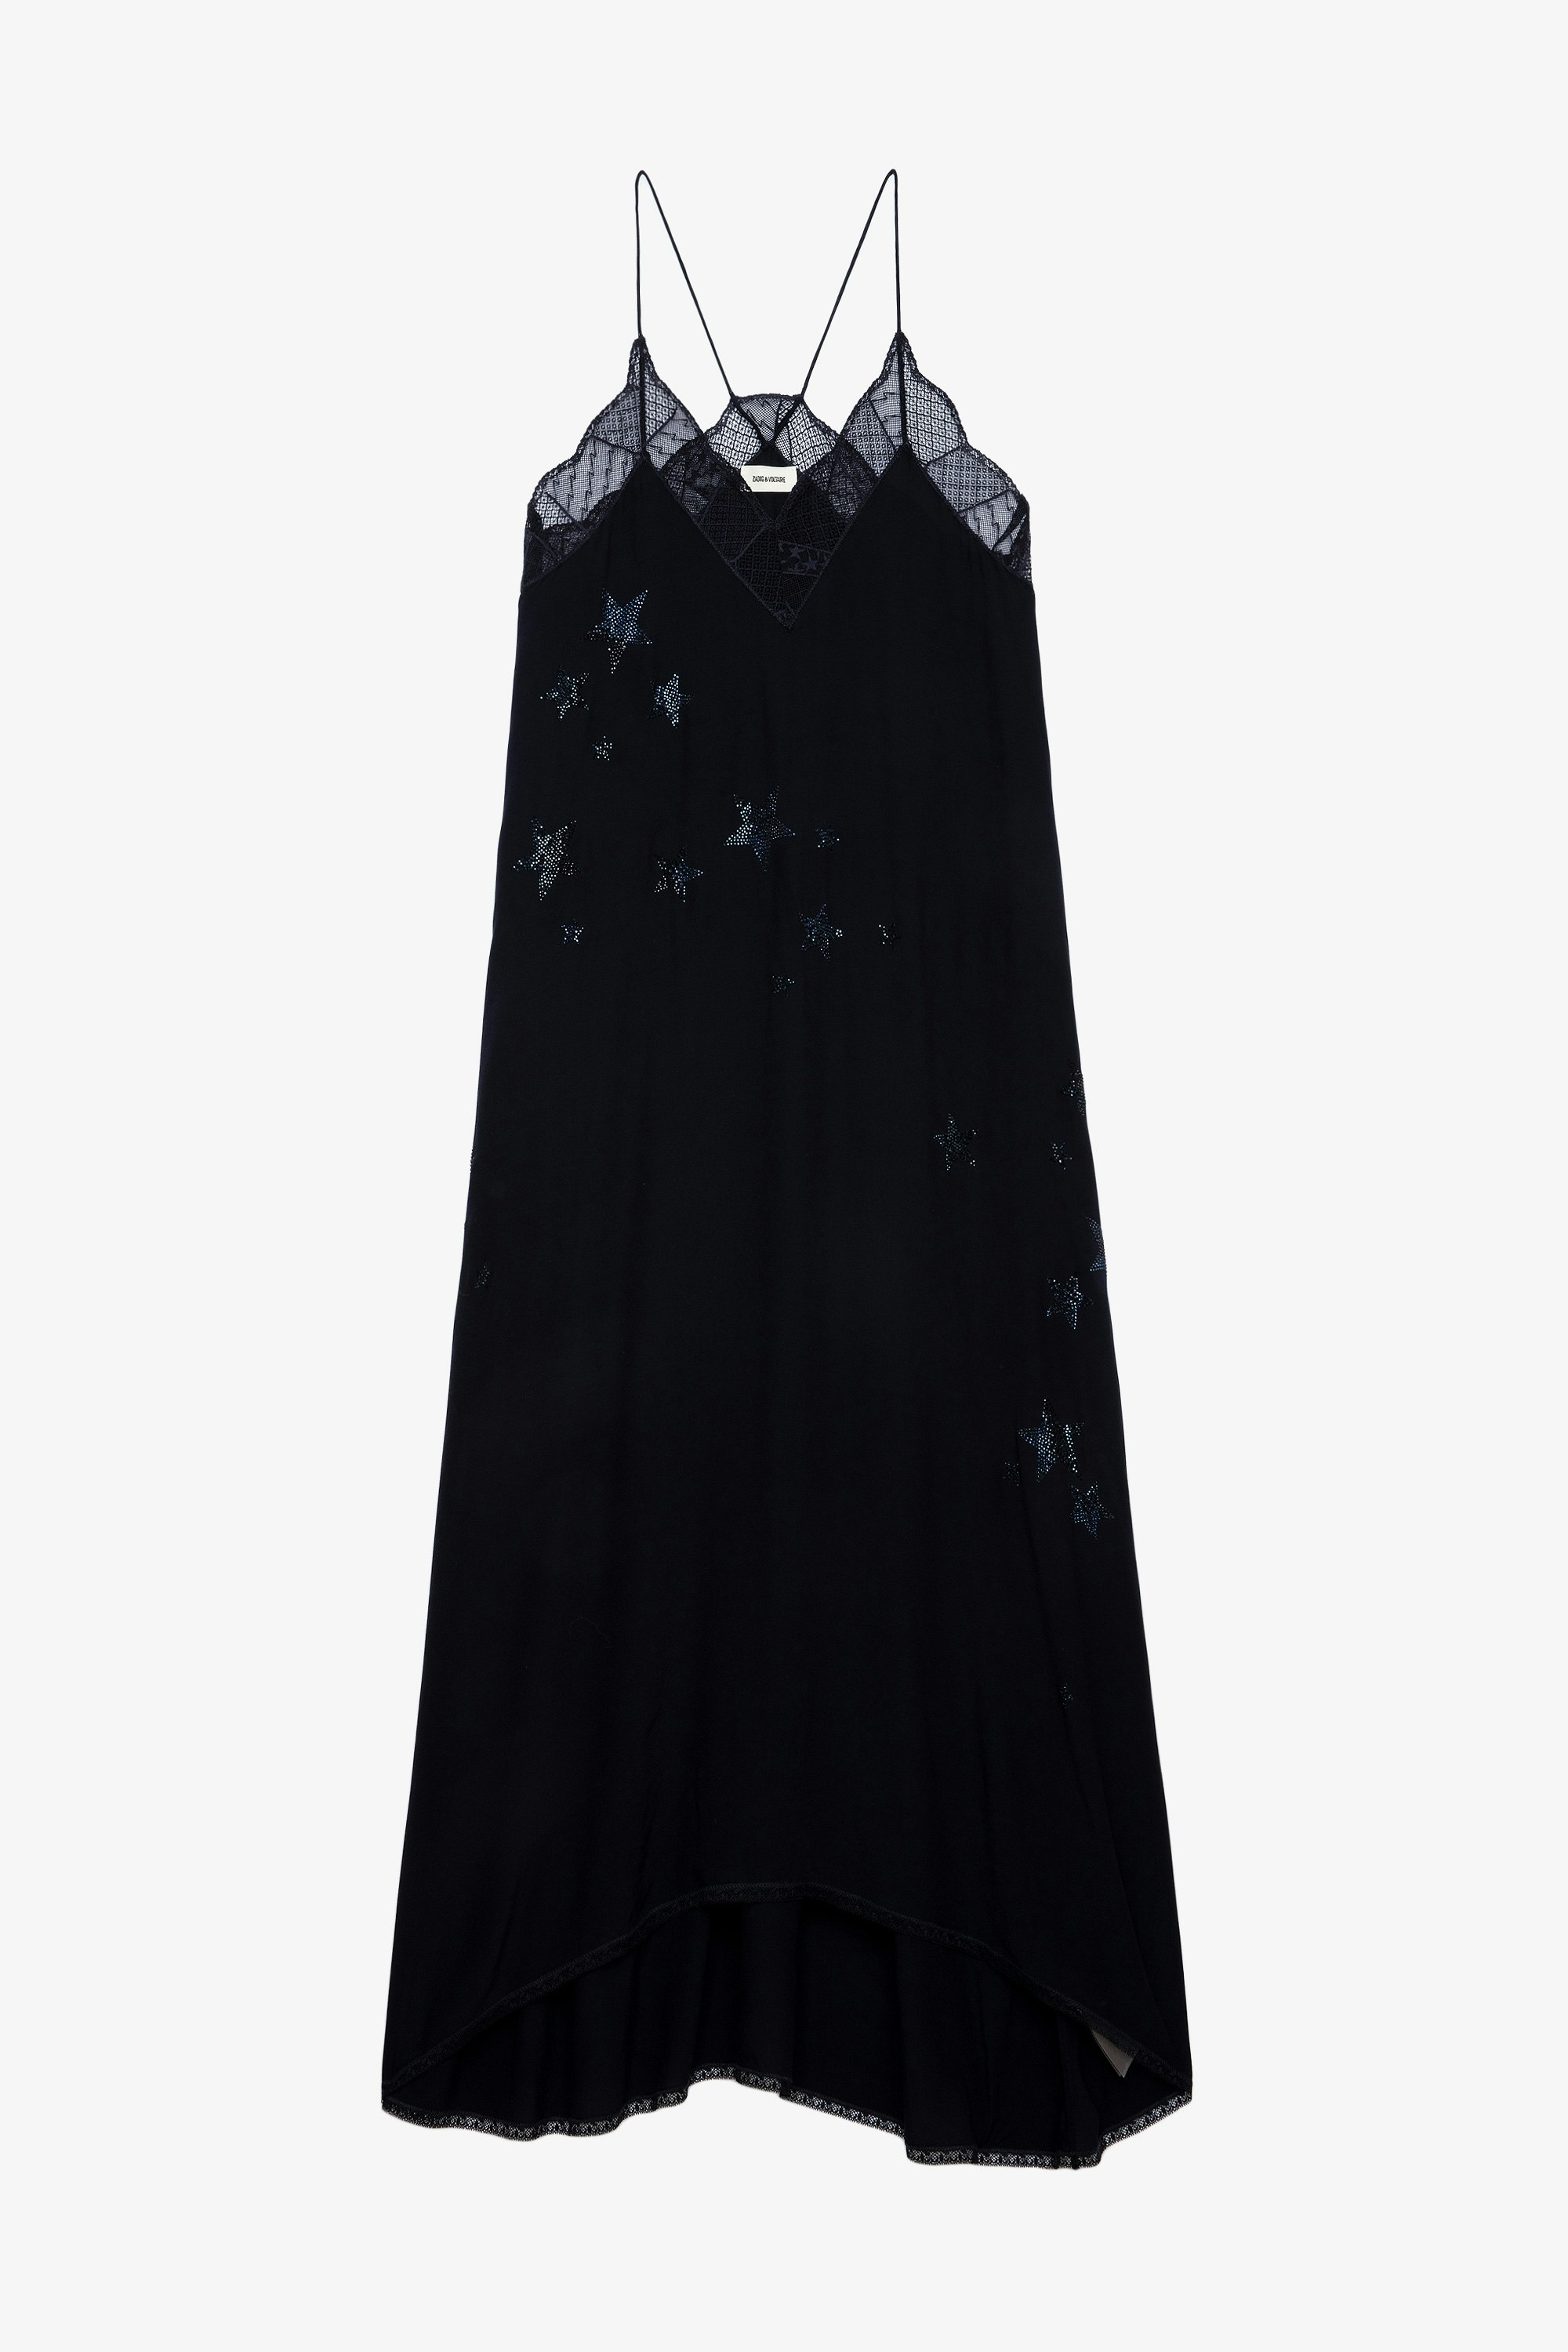 Kleid Risty Soft Strass Stars Langes, marineblaues Damenkleid mit Spitzenrändern und kristallverziertem Sternmotiv